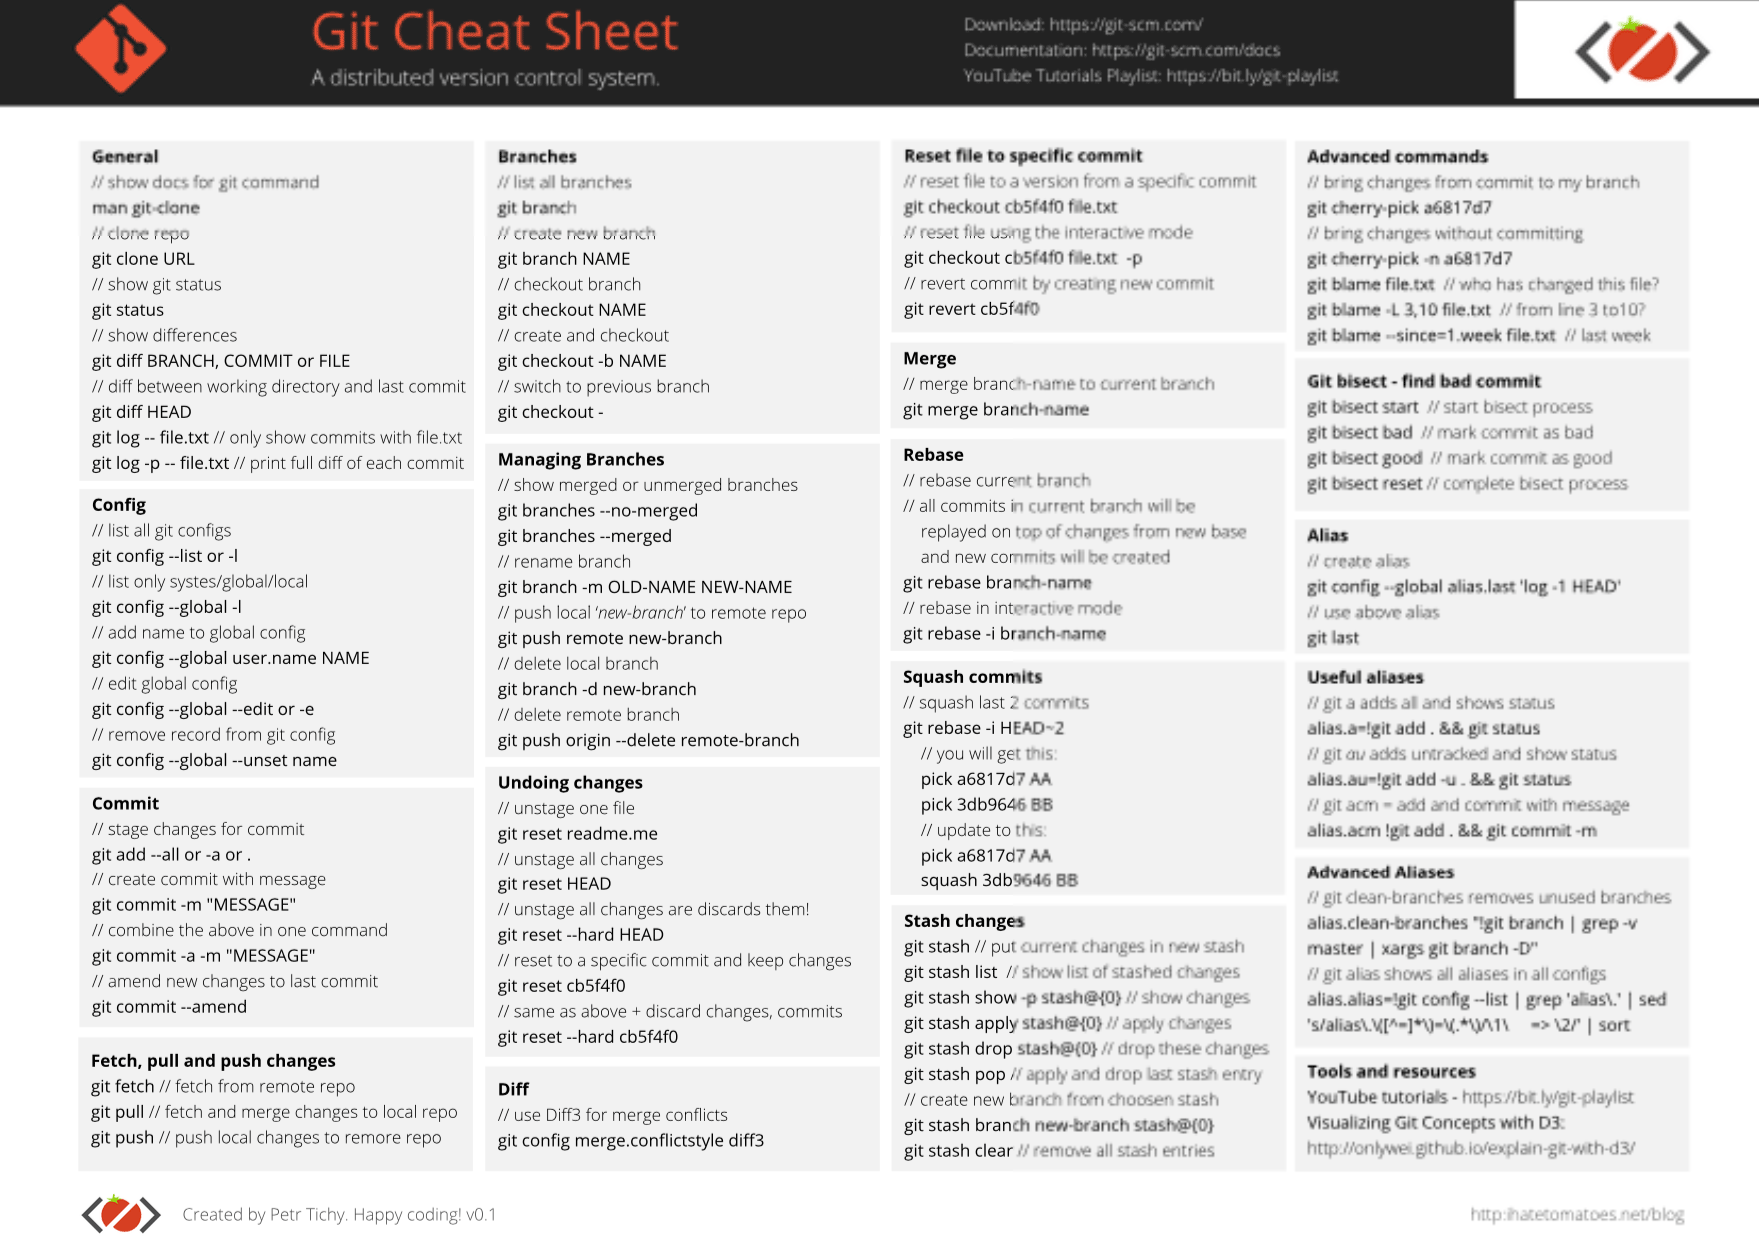 Git Cheat Sheet by Ihatetomatoes